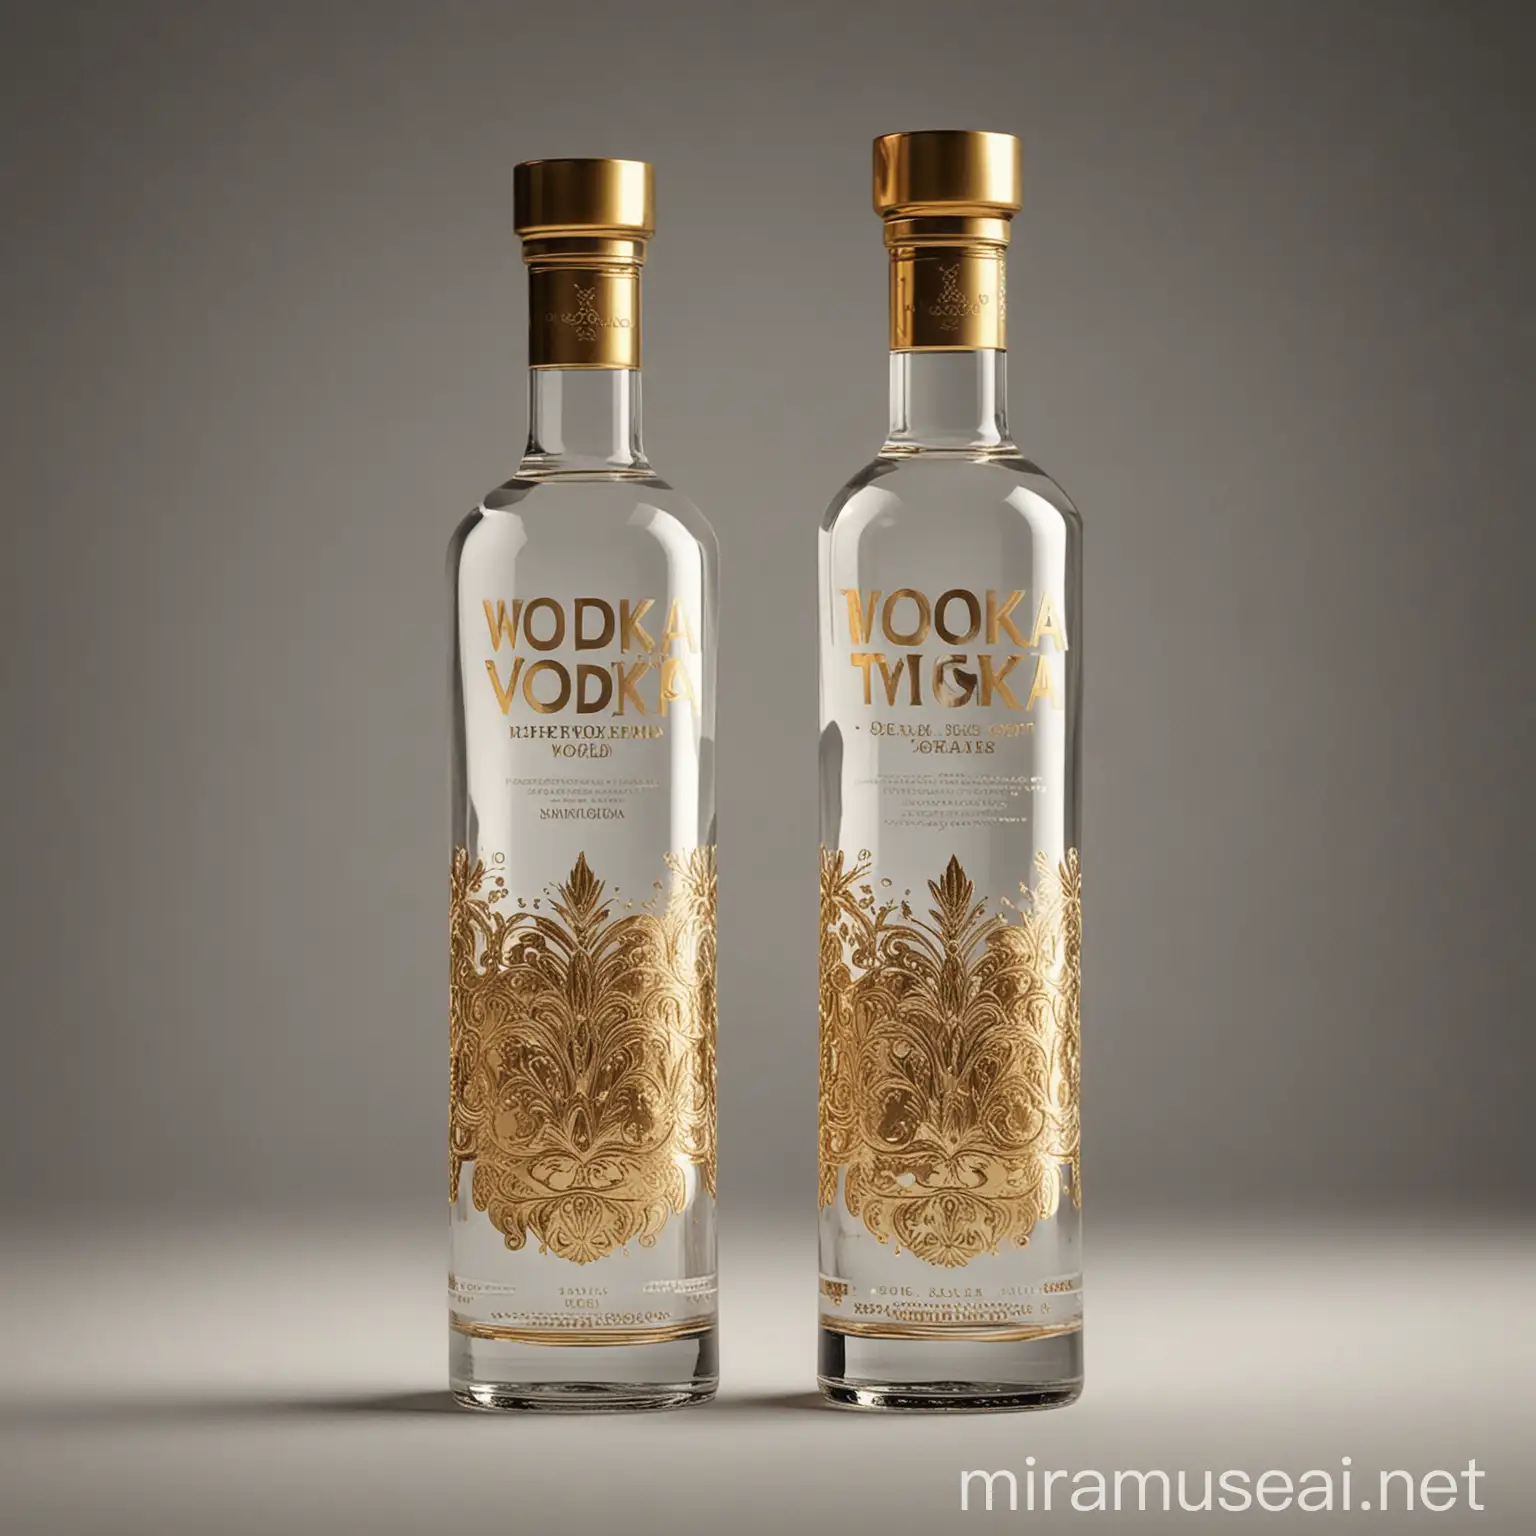 Elegant Vodka Bottle Design with Gold Accents